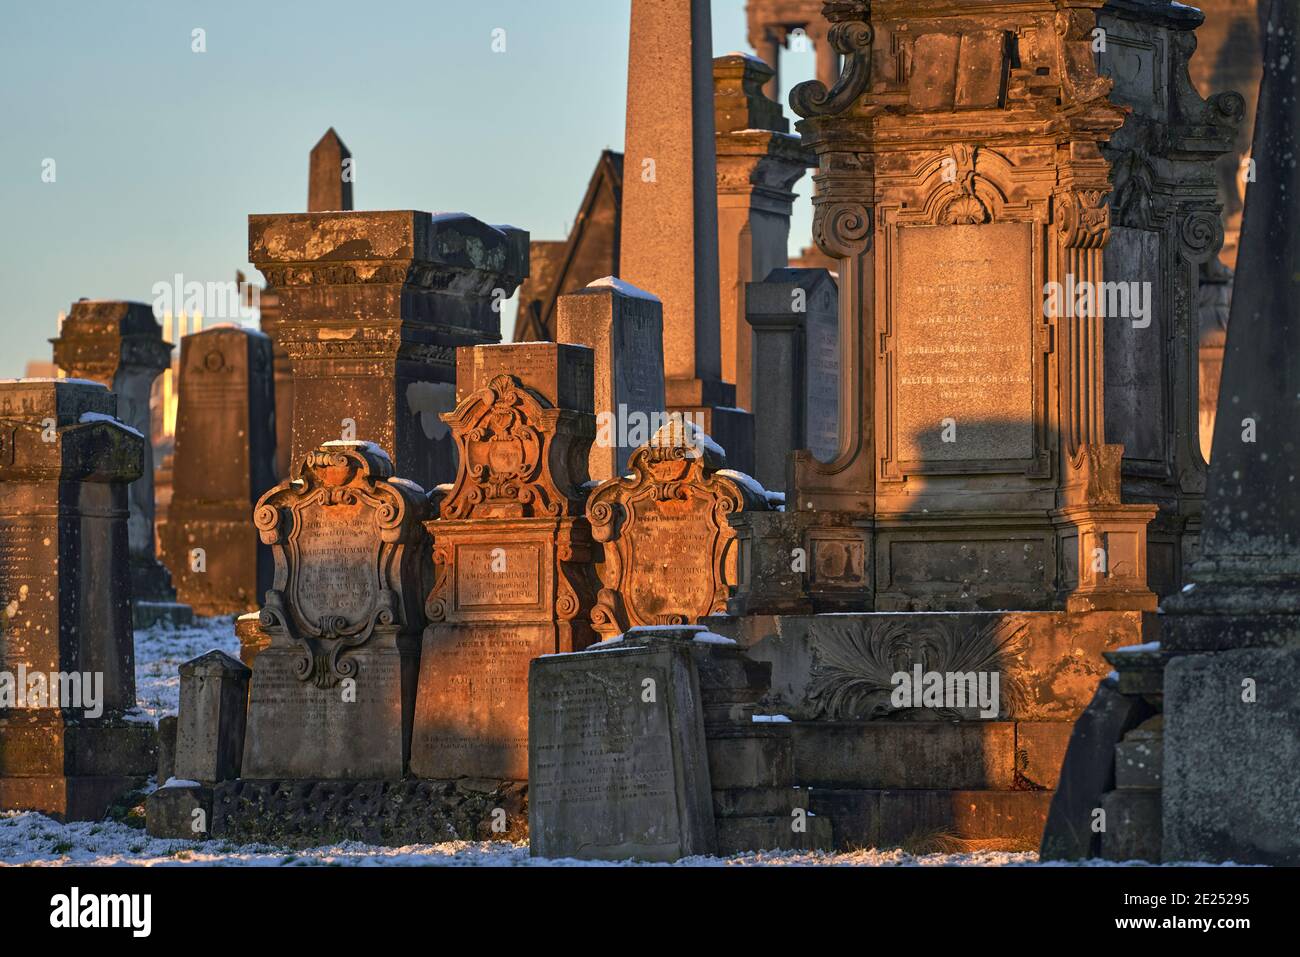 Gros plan d'un groupe de pierres angulaires et de monuments qui se sont emparés lors d'une journée hivernale enneigée dans la nécropole de Glasgow. Banque D'Images